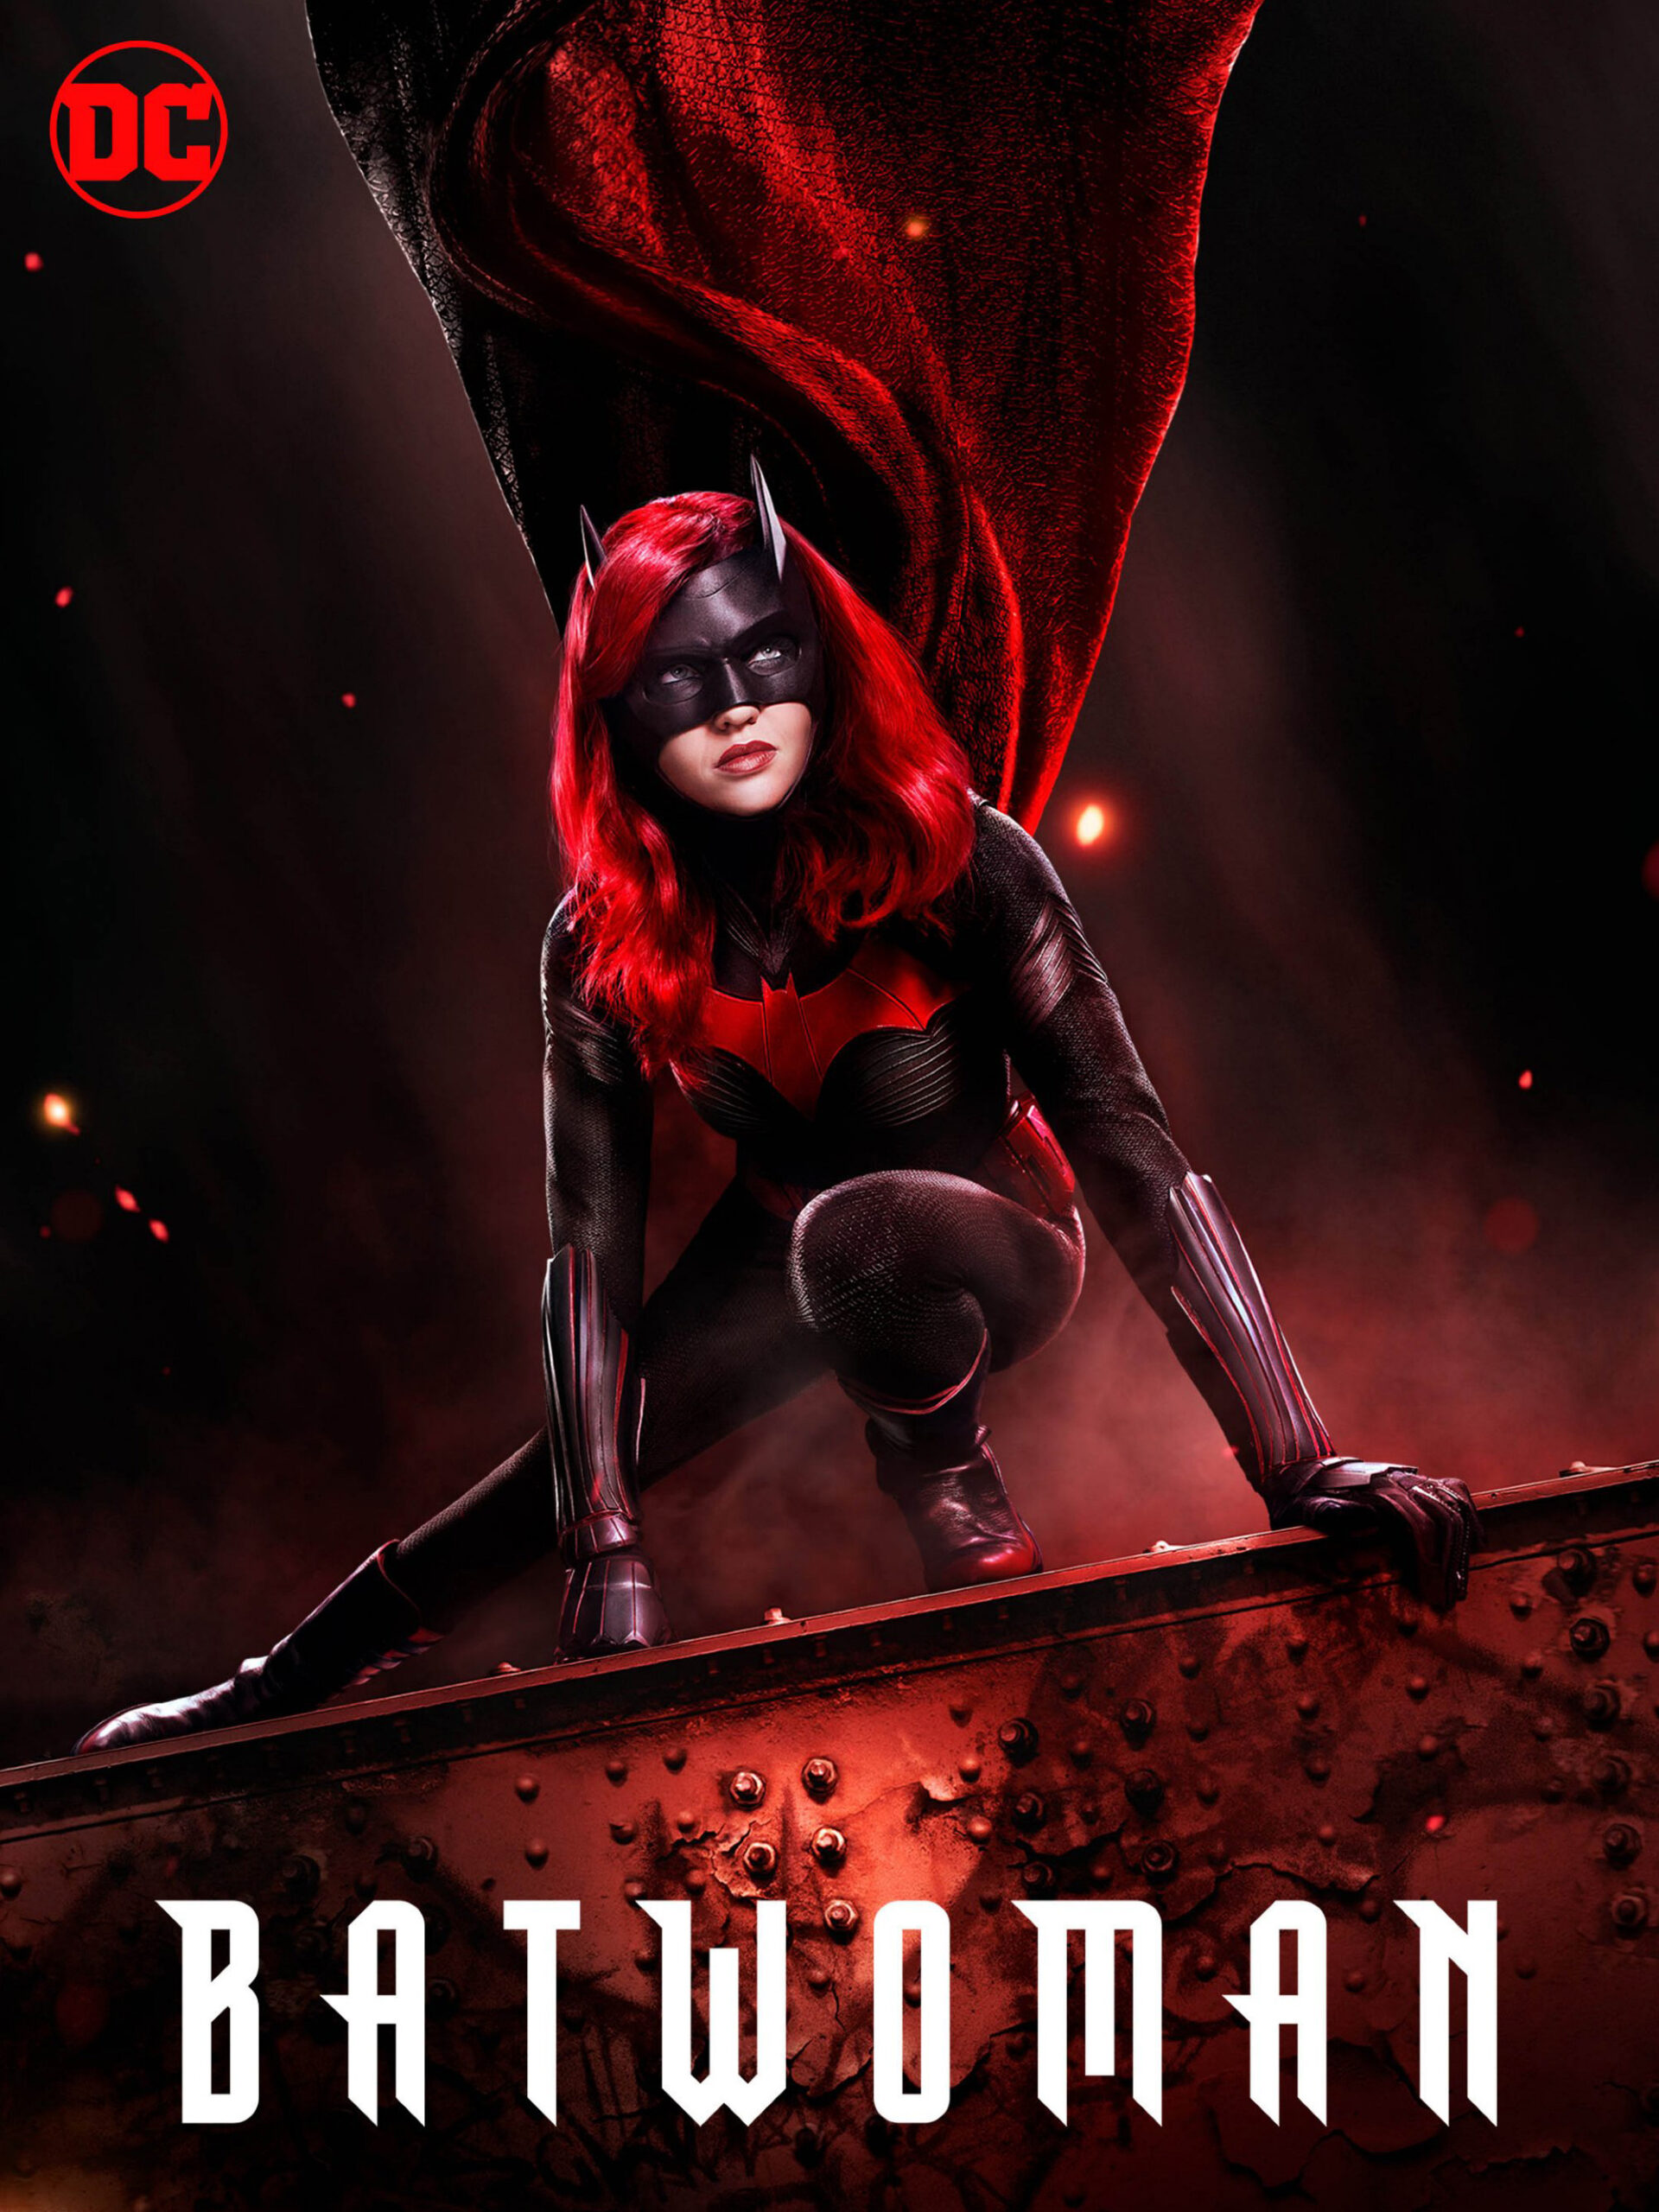 ดูหนังออนไลน์ฟรี Batwoman Season 1 (2019) EP.16 แบทวูแมน ซีซั่น 1 ตอนที่ 20 (Soundtrack)